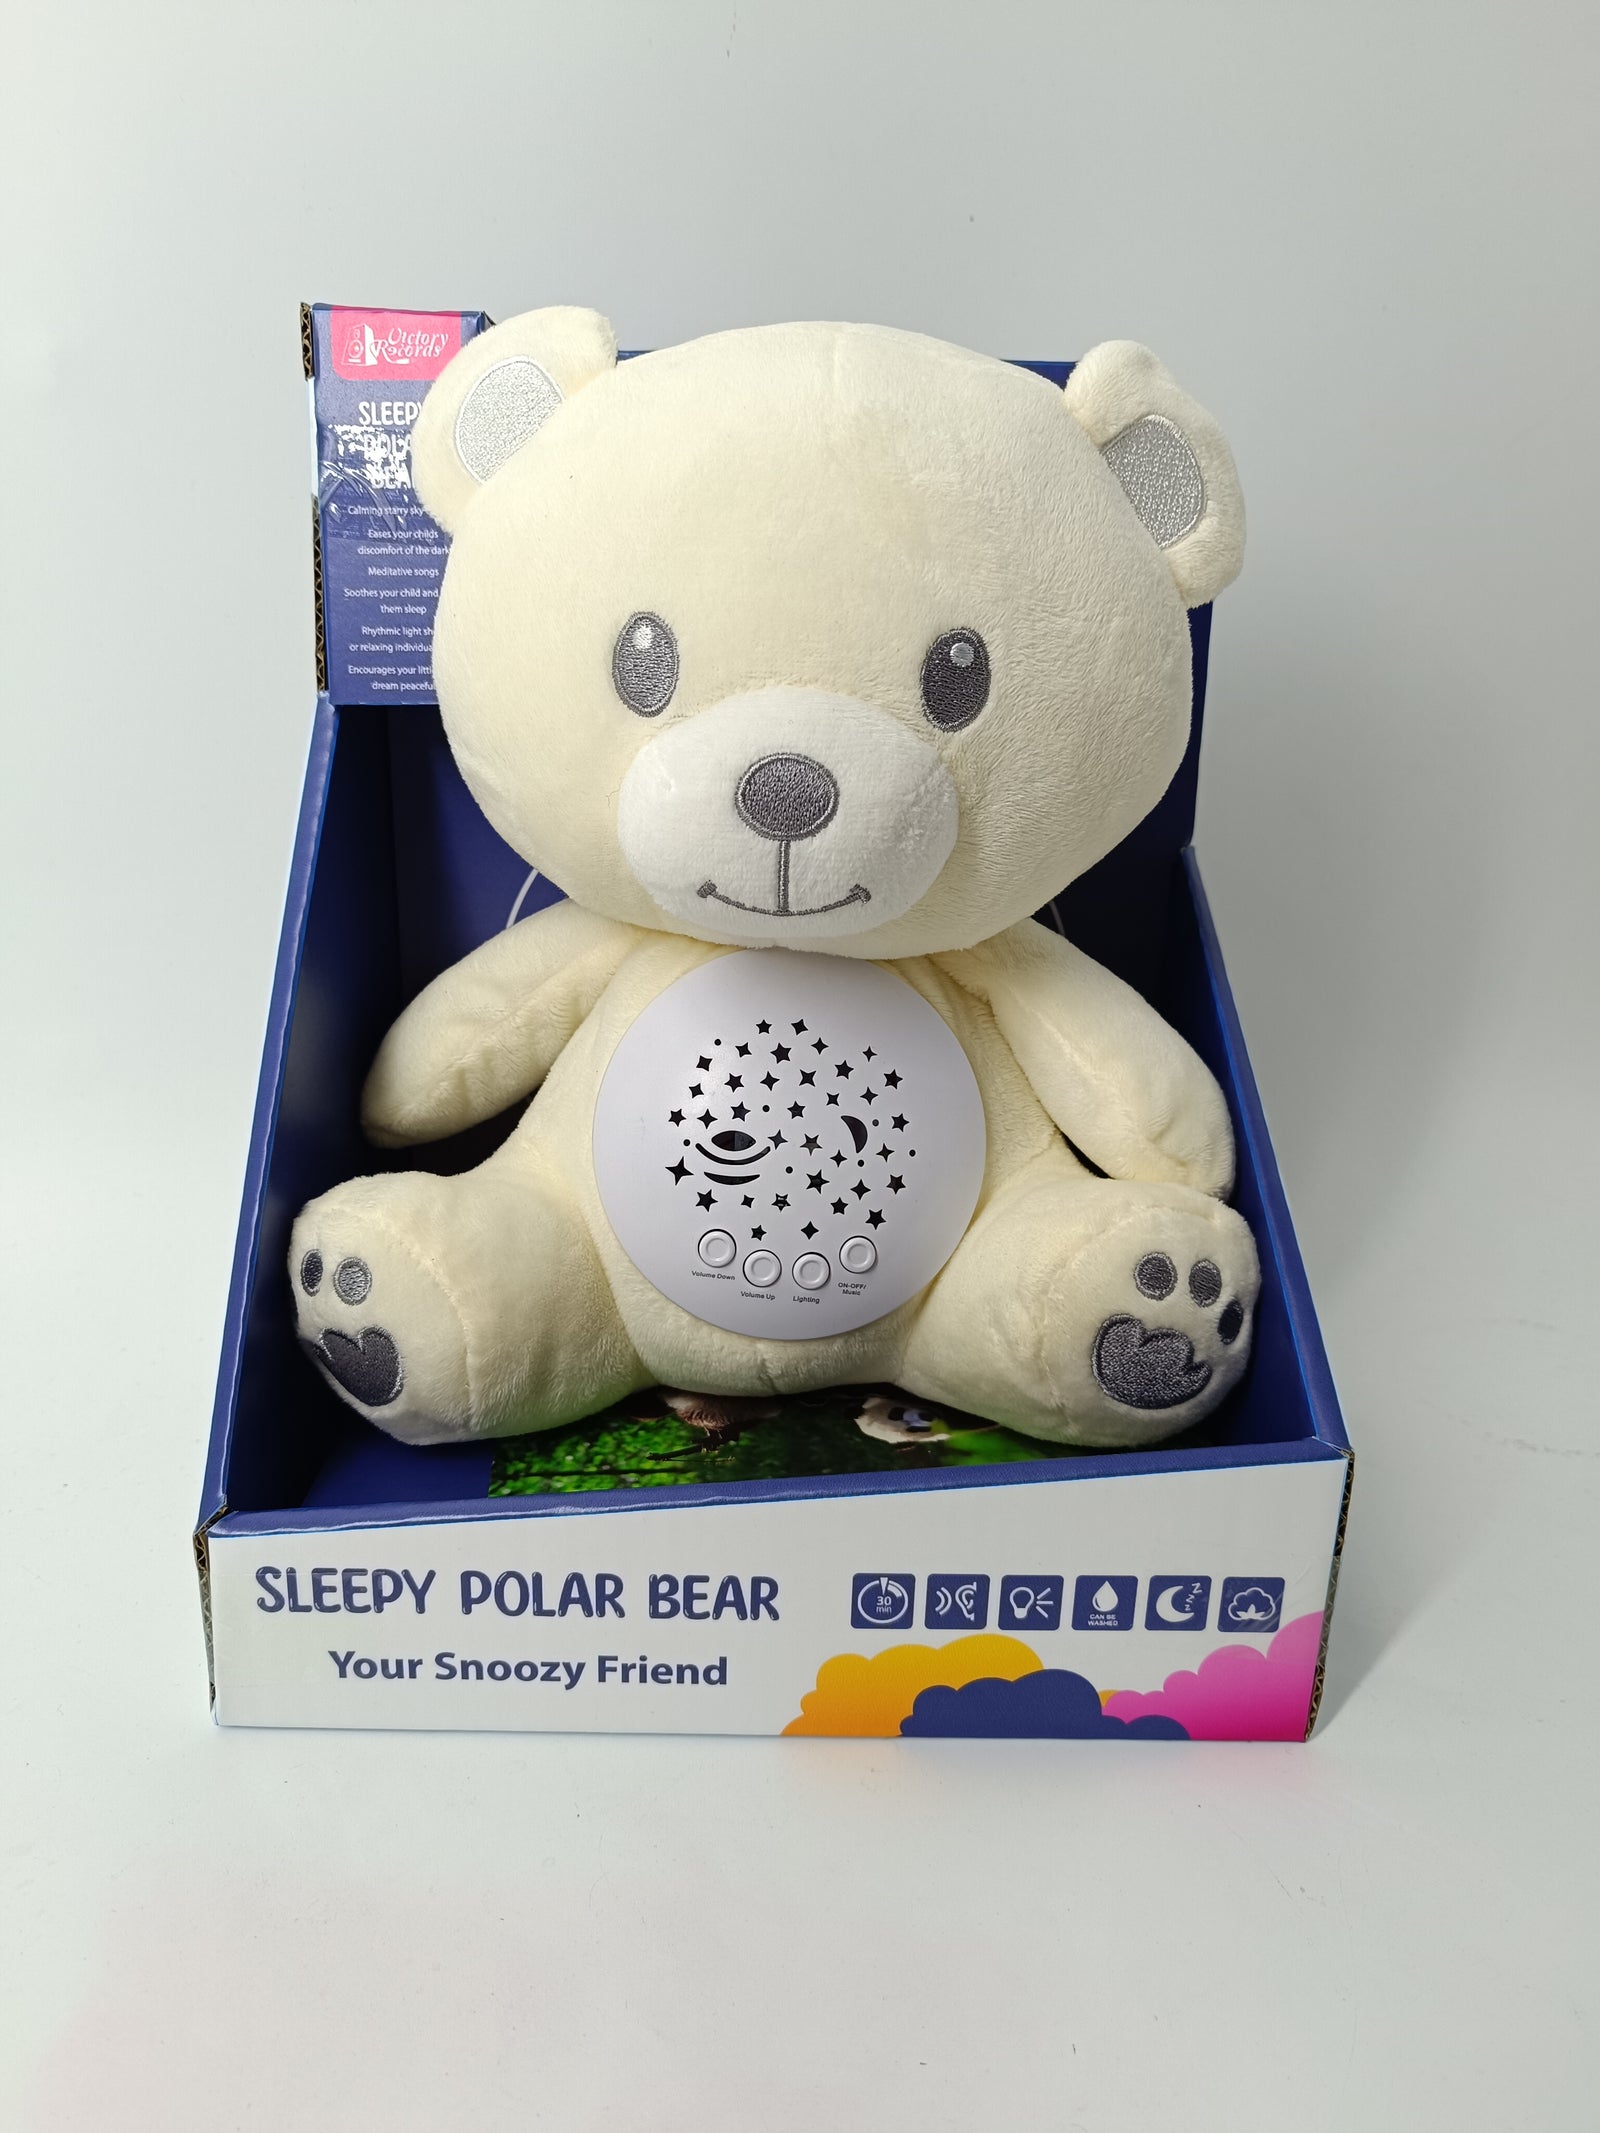 Sleepy Polar Bear Your Snoozy Friend (with sound & light)